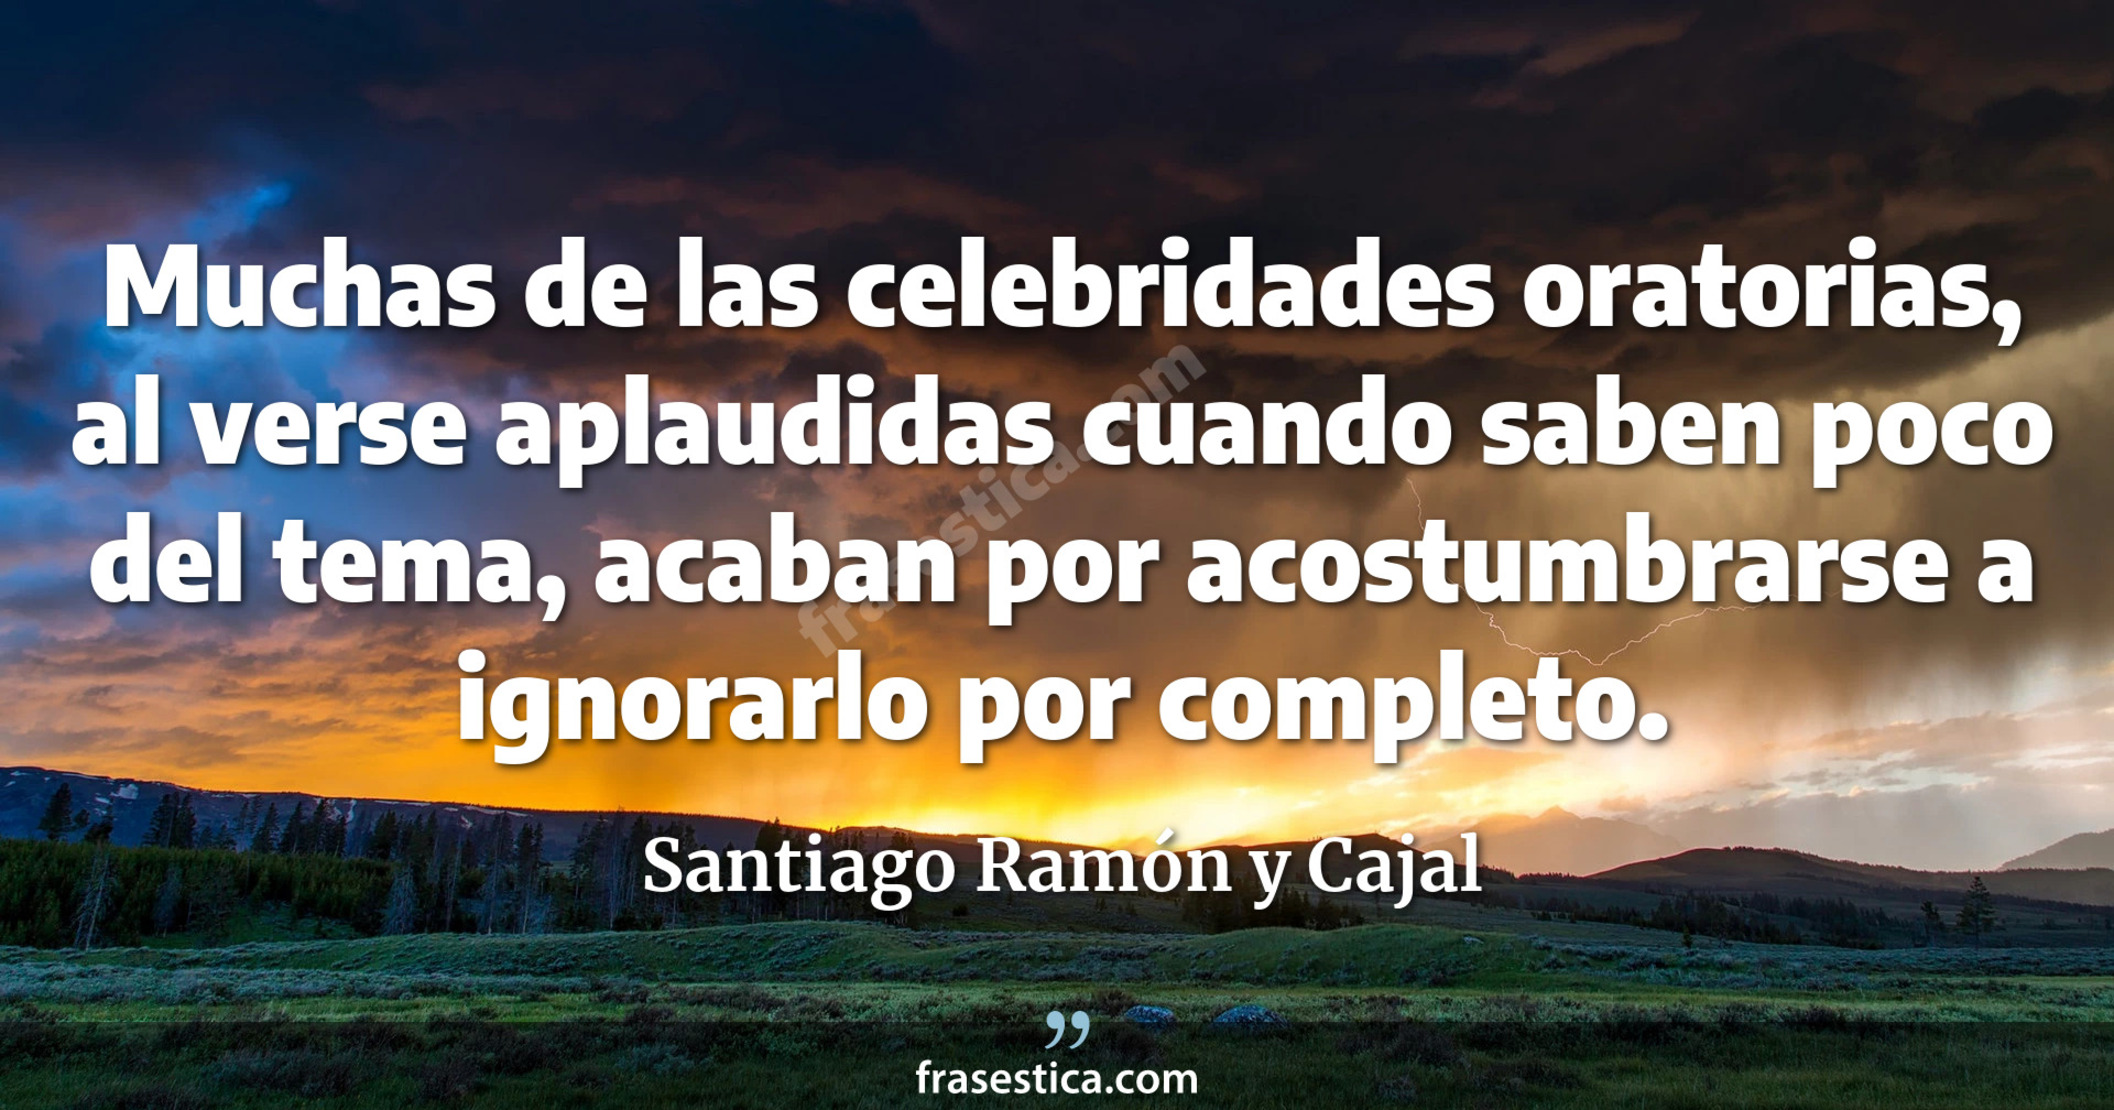 Muchas de las celebridades oratorias, al verse aplaudidas cuando saben poco del tema, acaban por acostumbrarse a ignorarlo por completo. - Santiago Ramón y Cajal